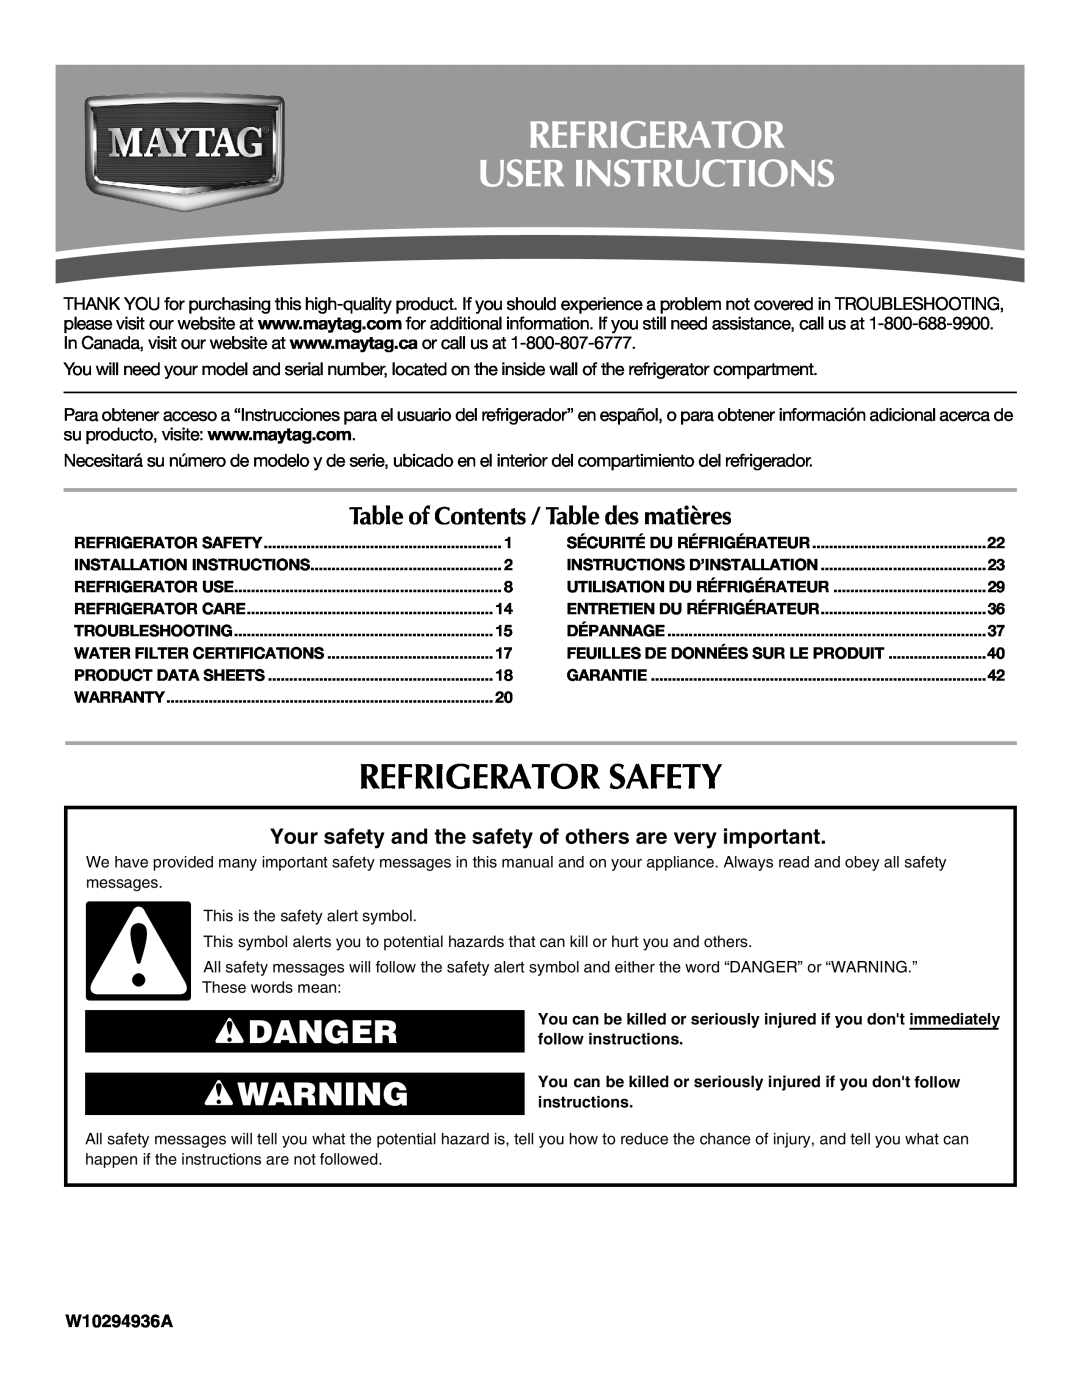 Maytag W10295064A installation instructions Refrigerator User Instructions, Refrigerator Safety, Danger, W10294936A 